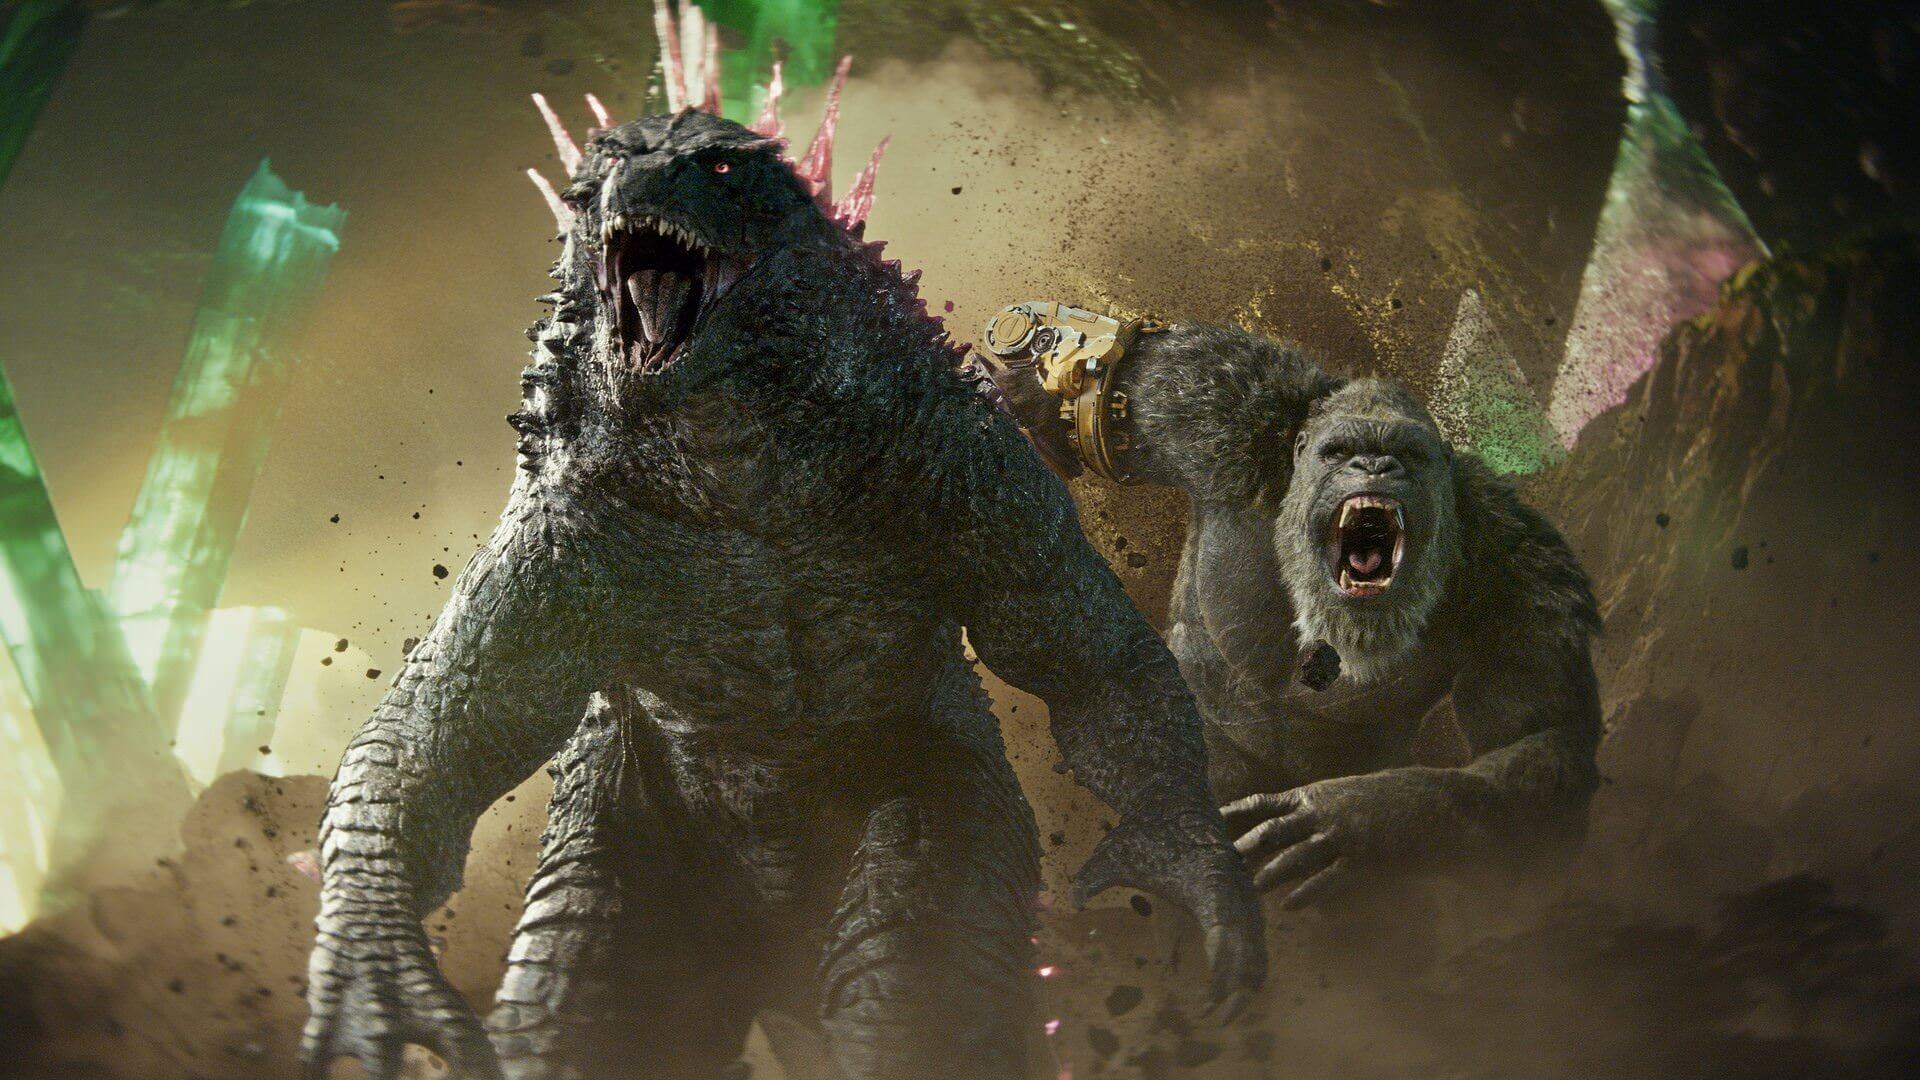 فیلم Godzilla x Kong شروعی فوق العاده در گیشه جهانی داشت